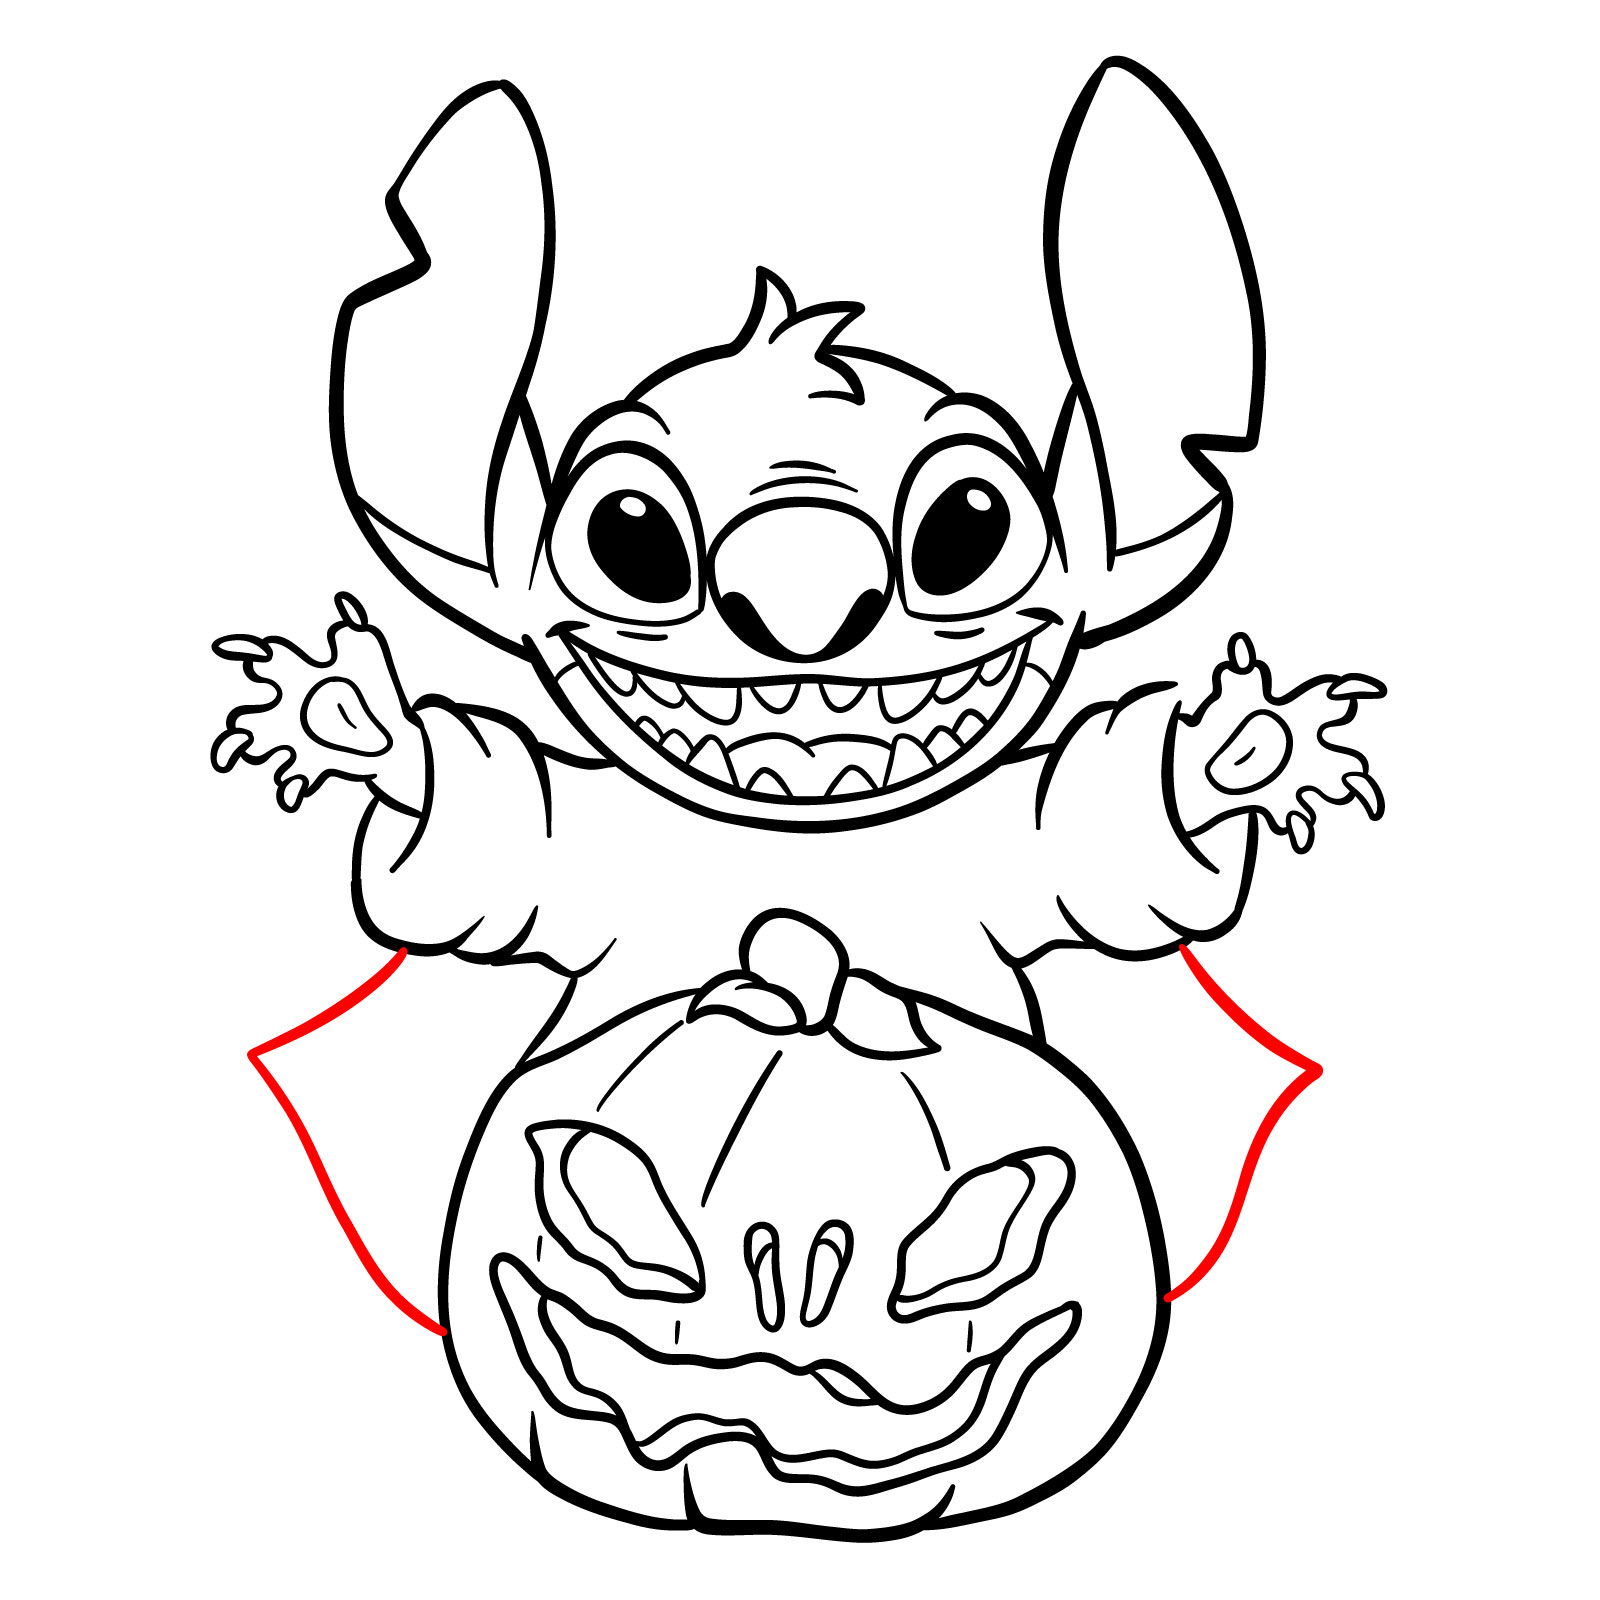 How to Draw Halloween Stitch with a jack-o'-lantern - step 29